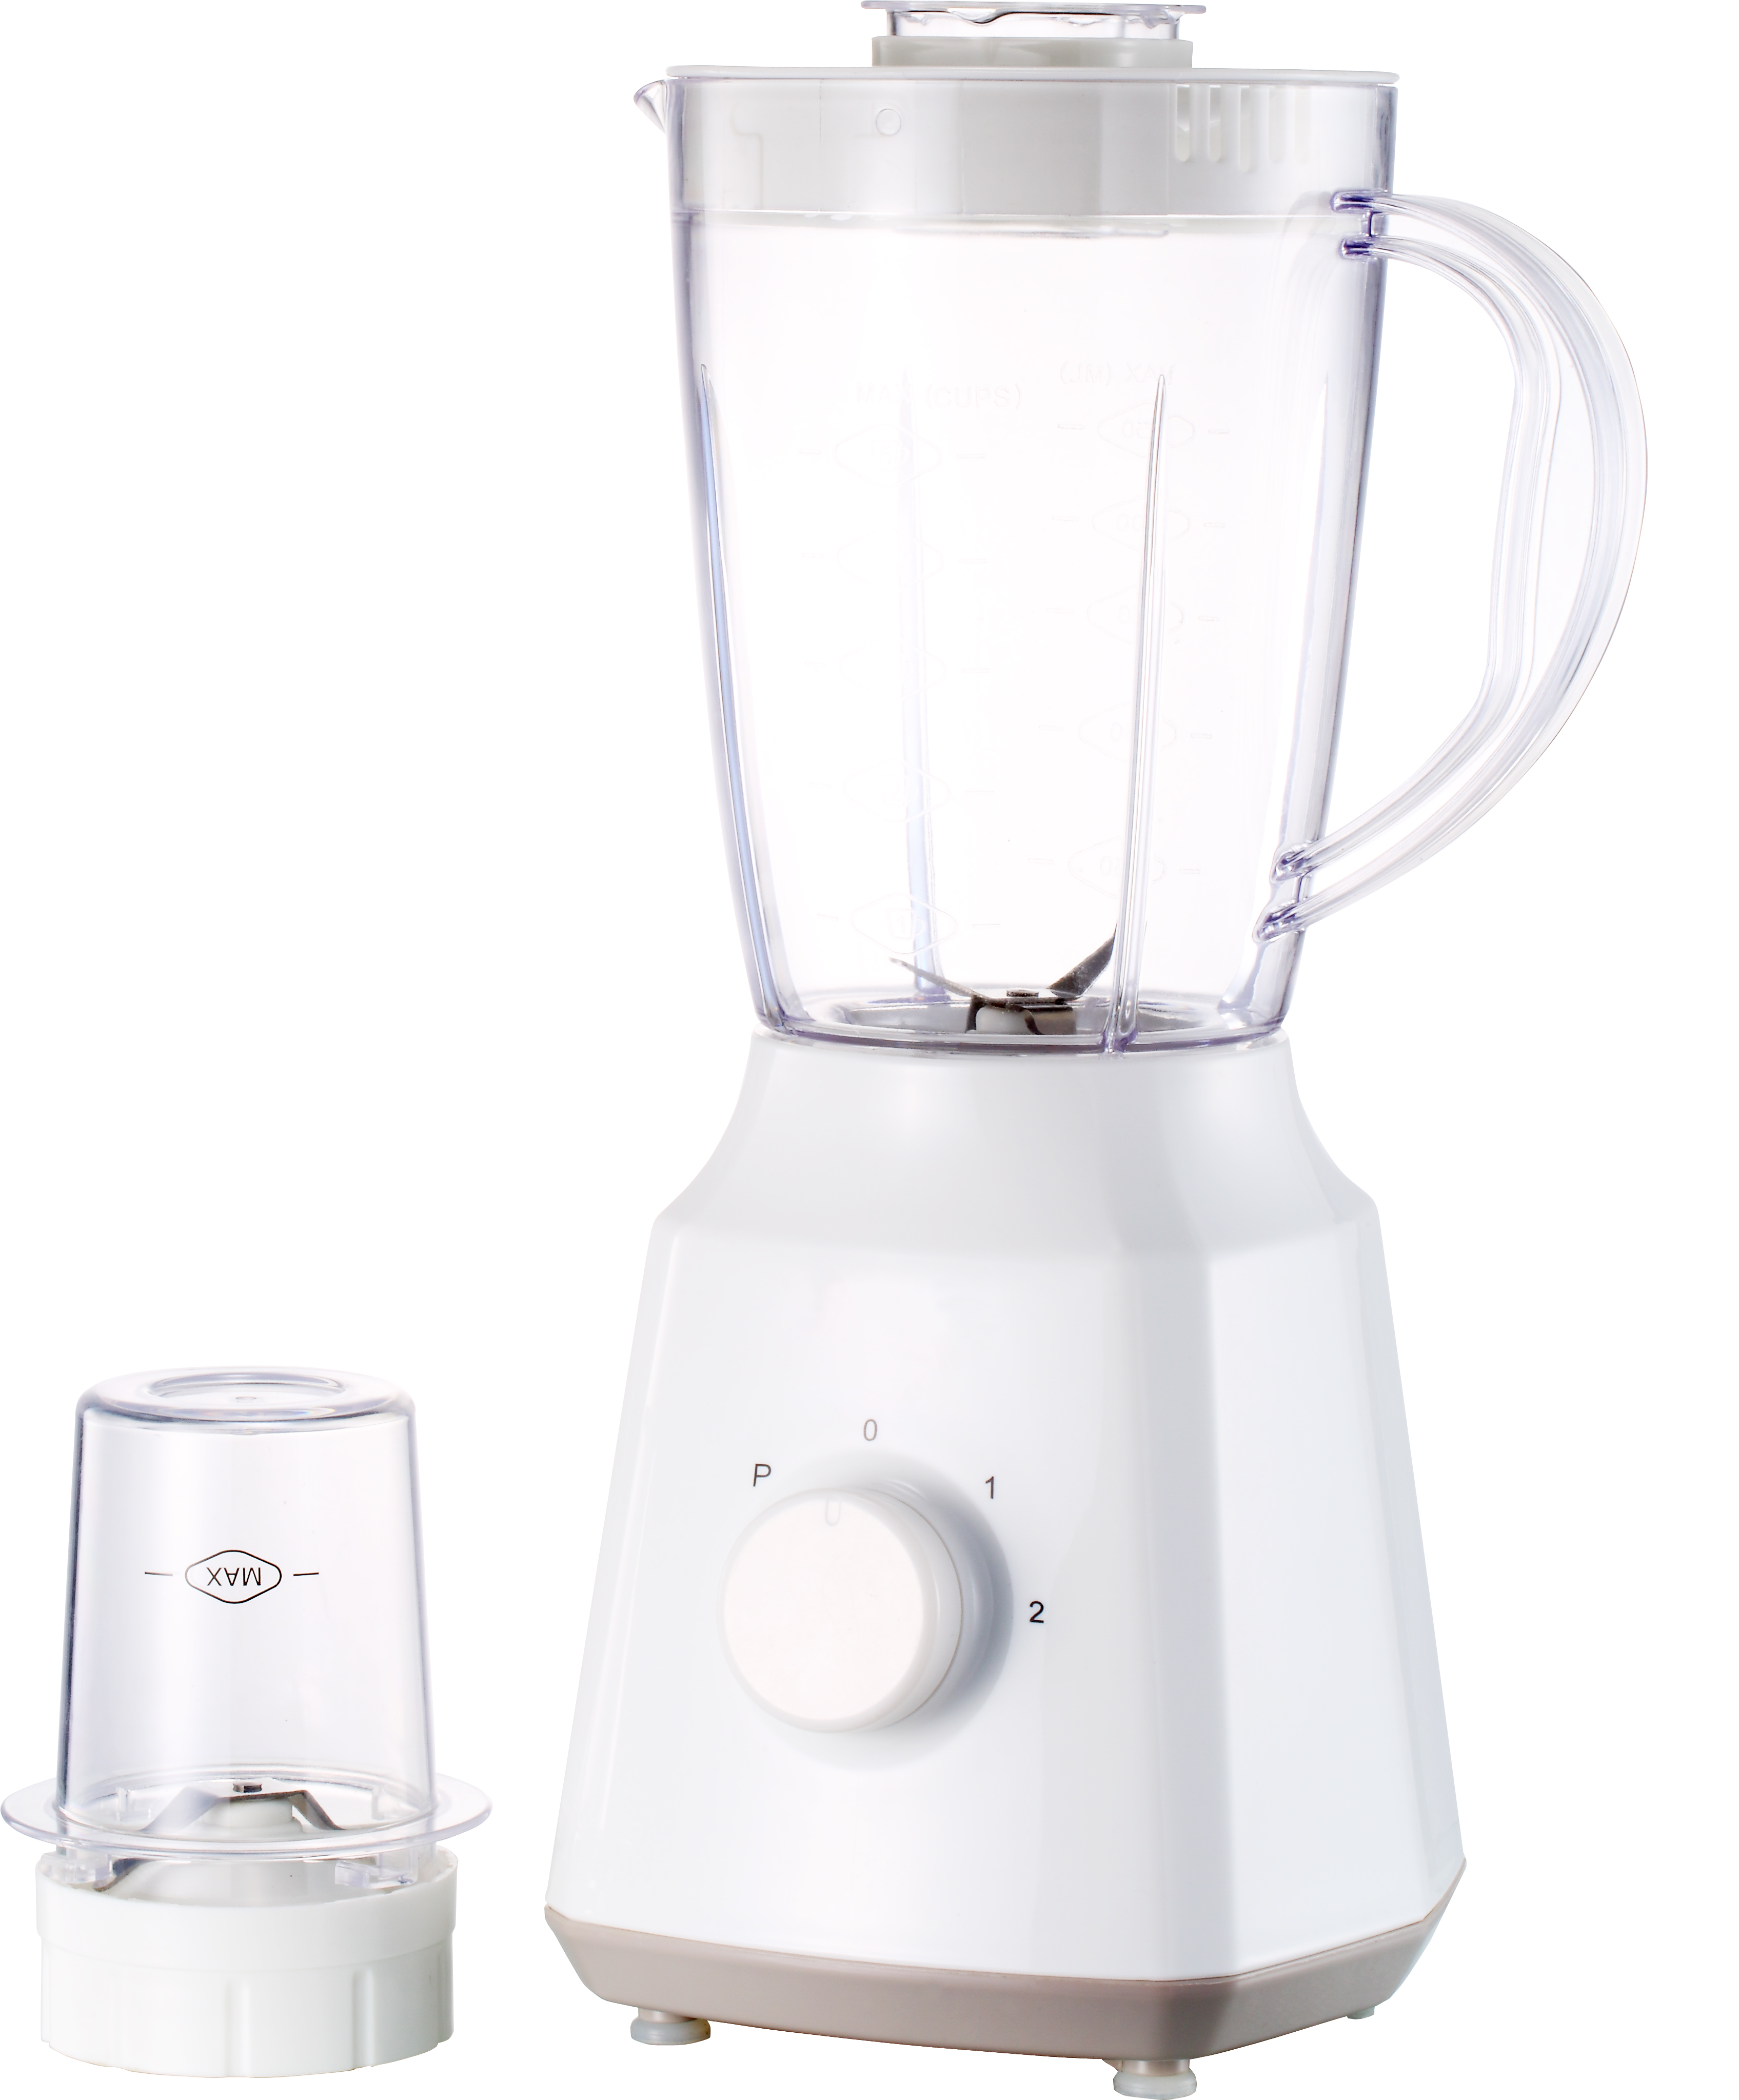 搅拌机白色 2 速家用电器厨房 300-350 瓦 1.5 升牢不可破的塑料 PC 罐